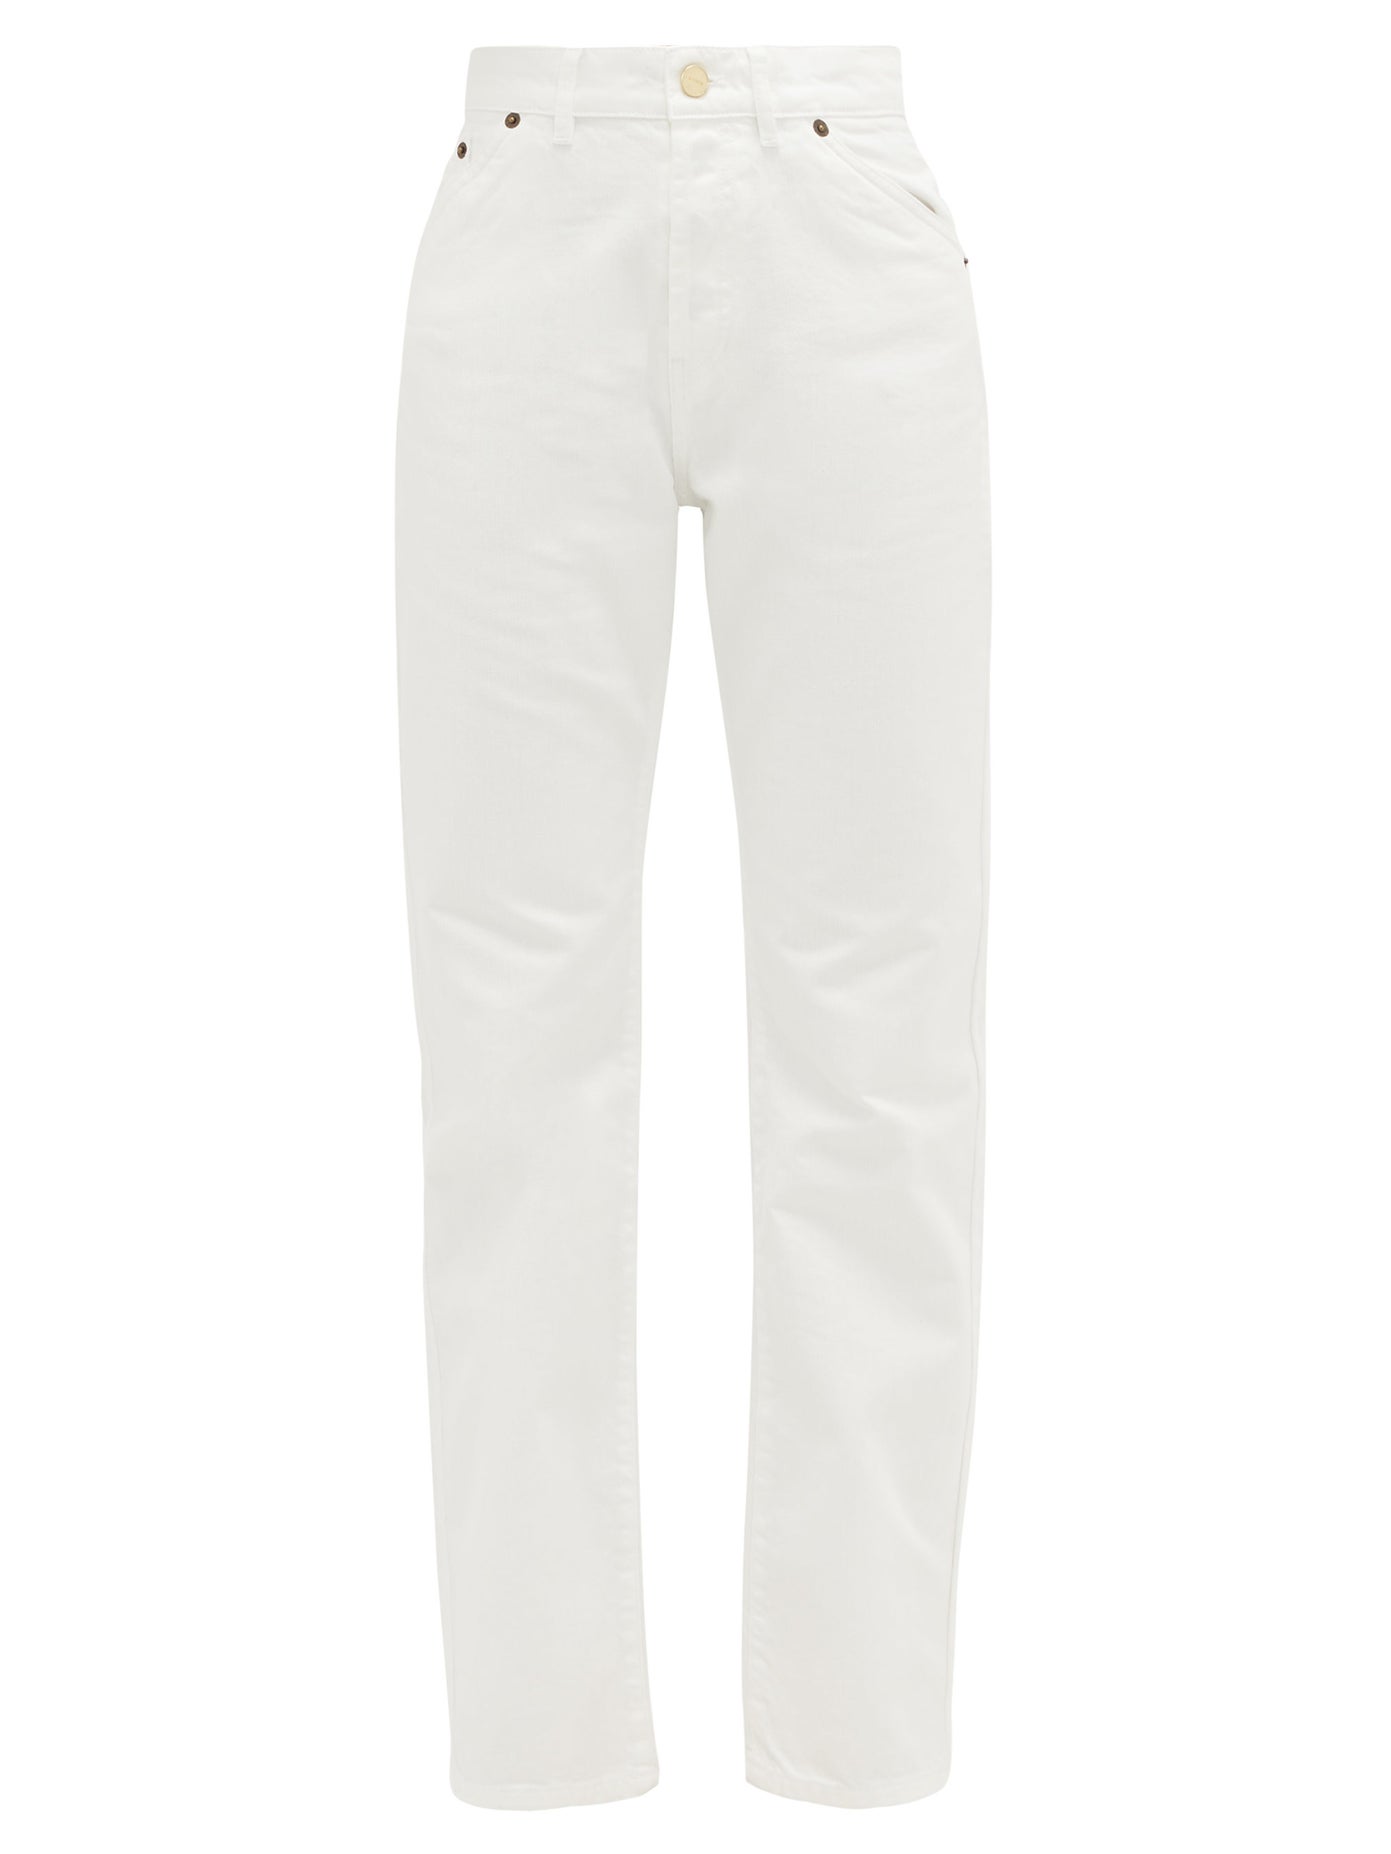 white jeans uk